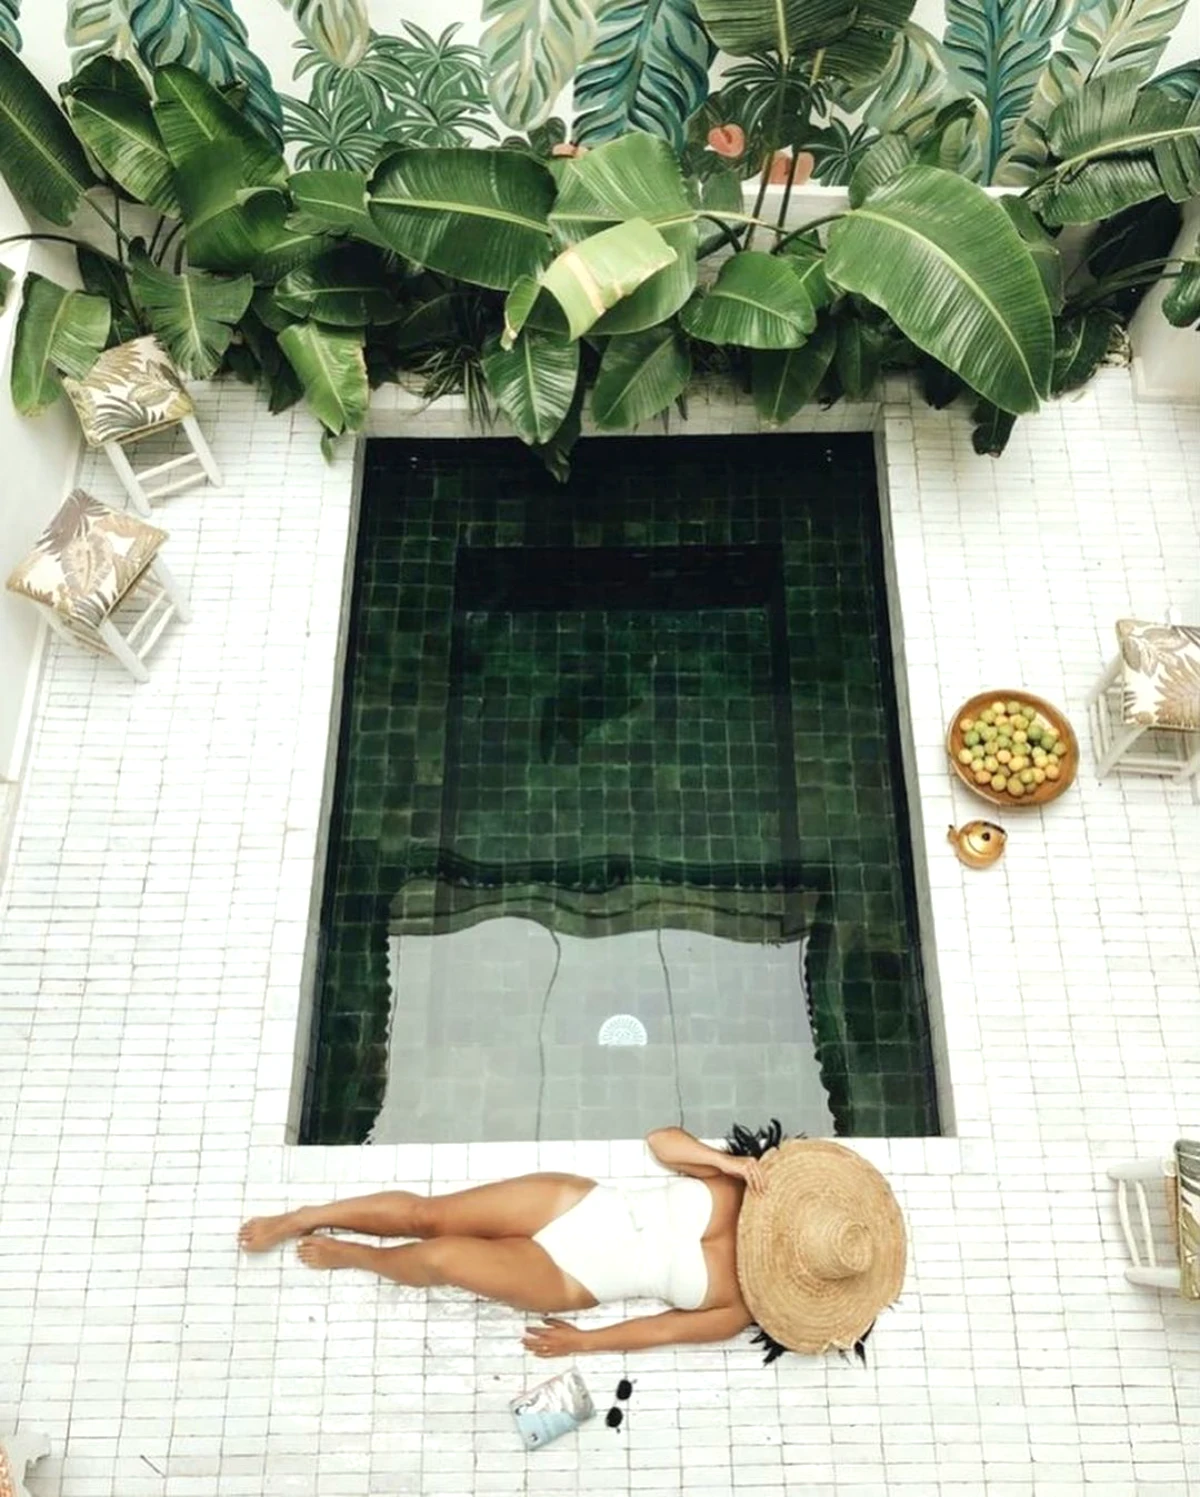 amenagement exotique autour d une piscine creusee plantes vertes femme maillot blanc